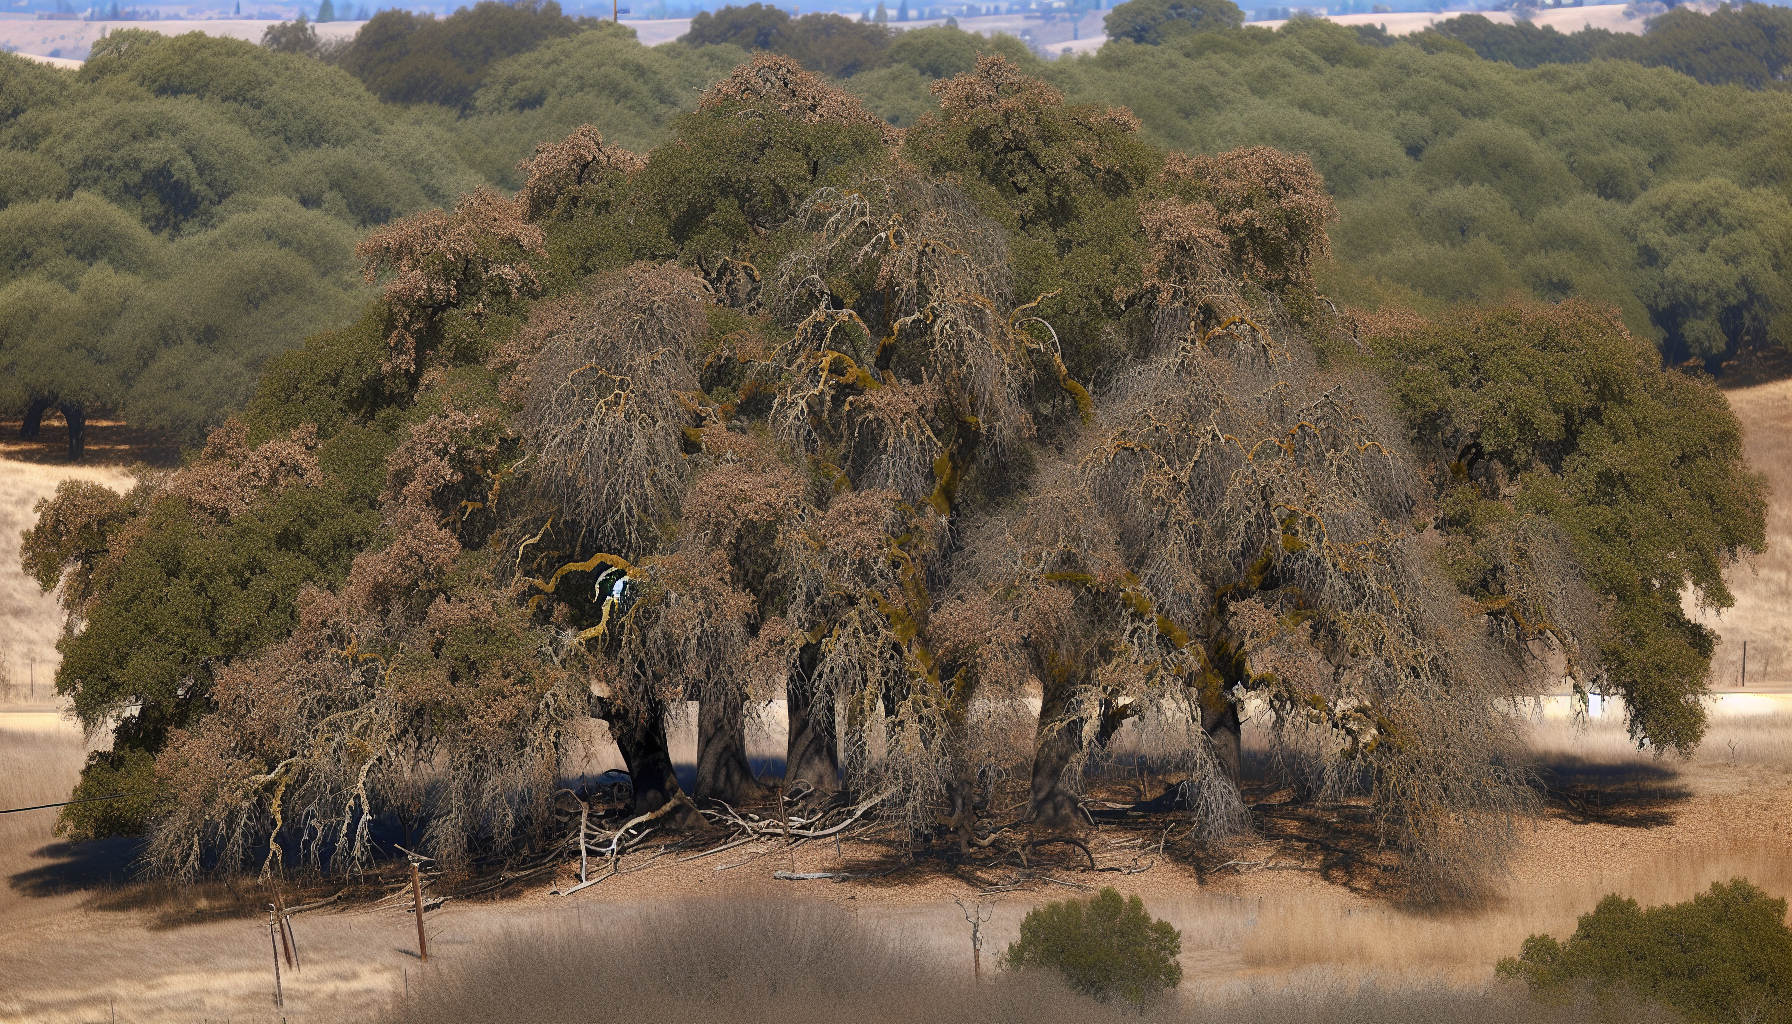 A photo of oak trees affected by oak wilt